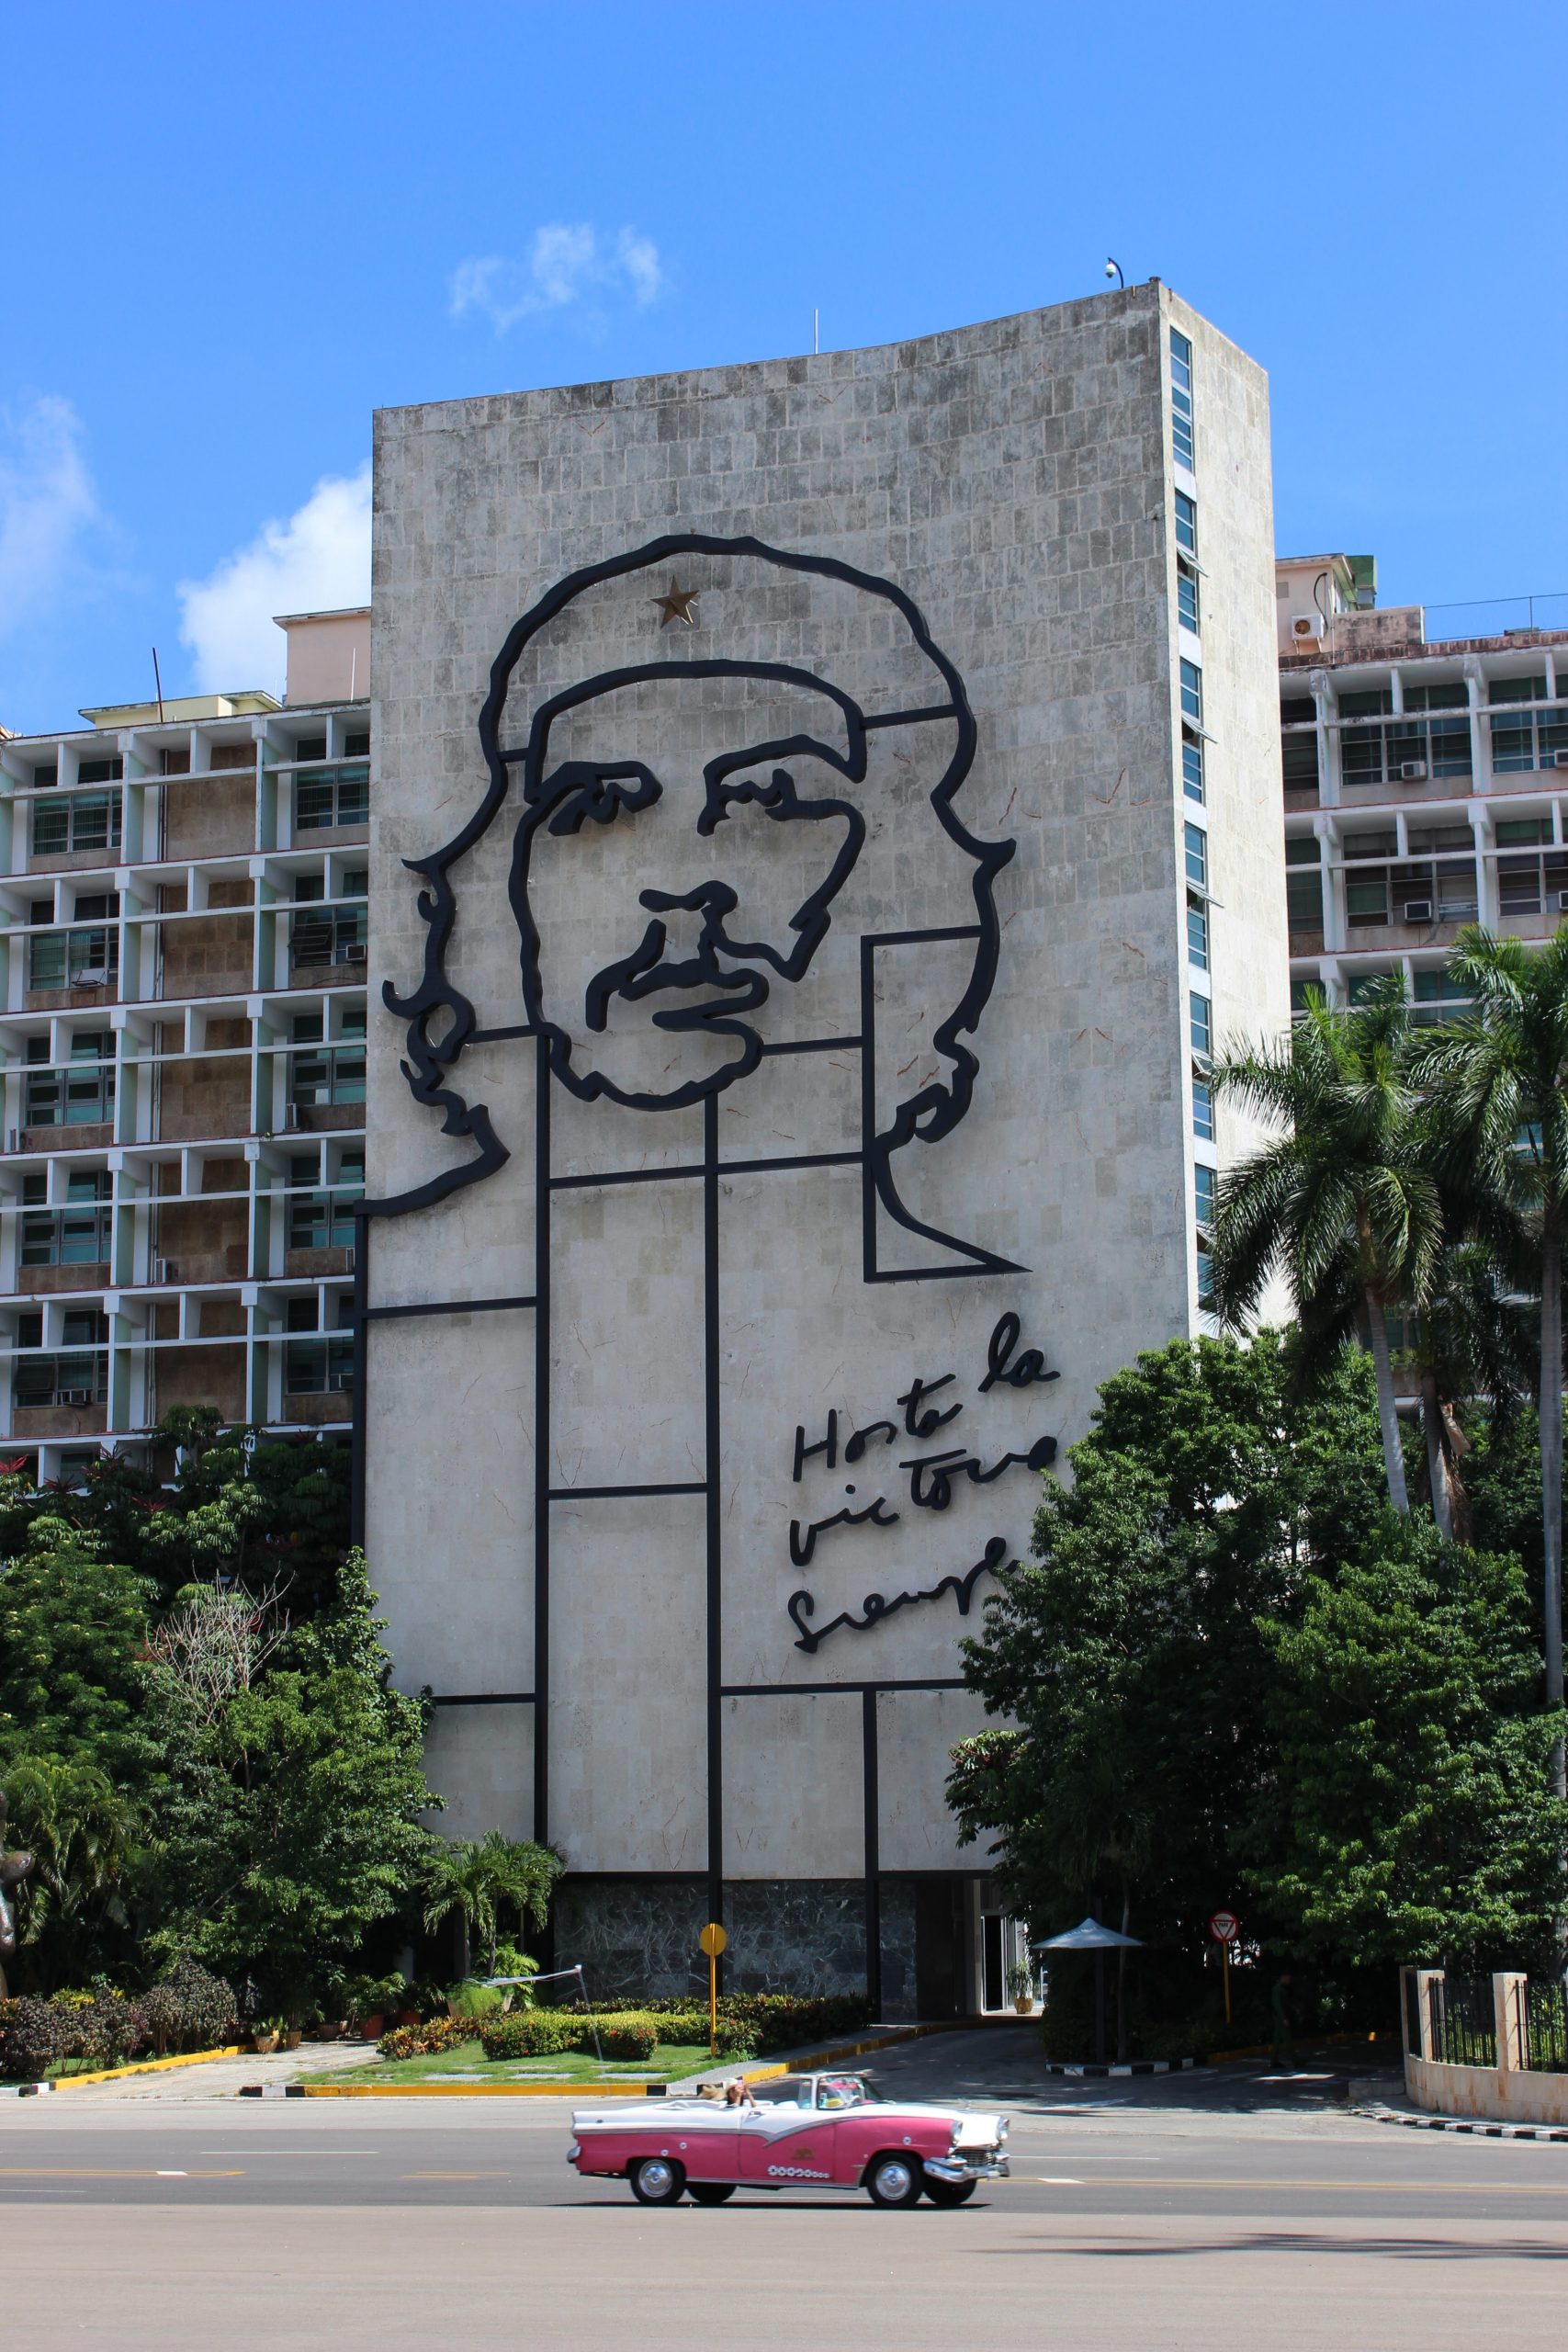 Kuba: Pessimistische Aussichten